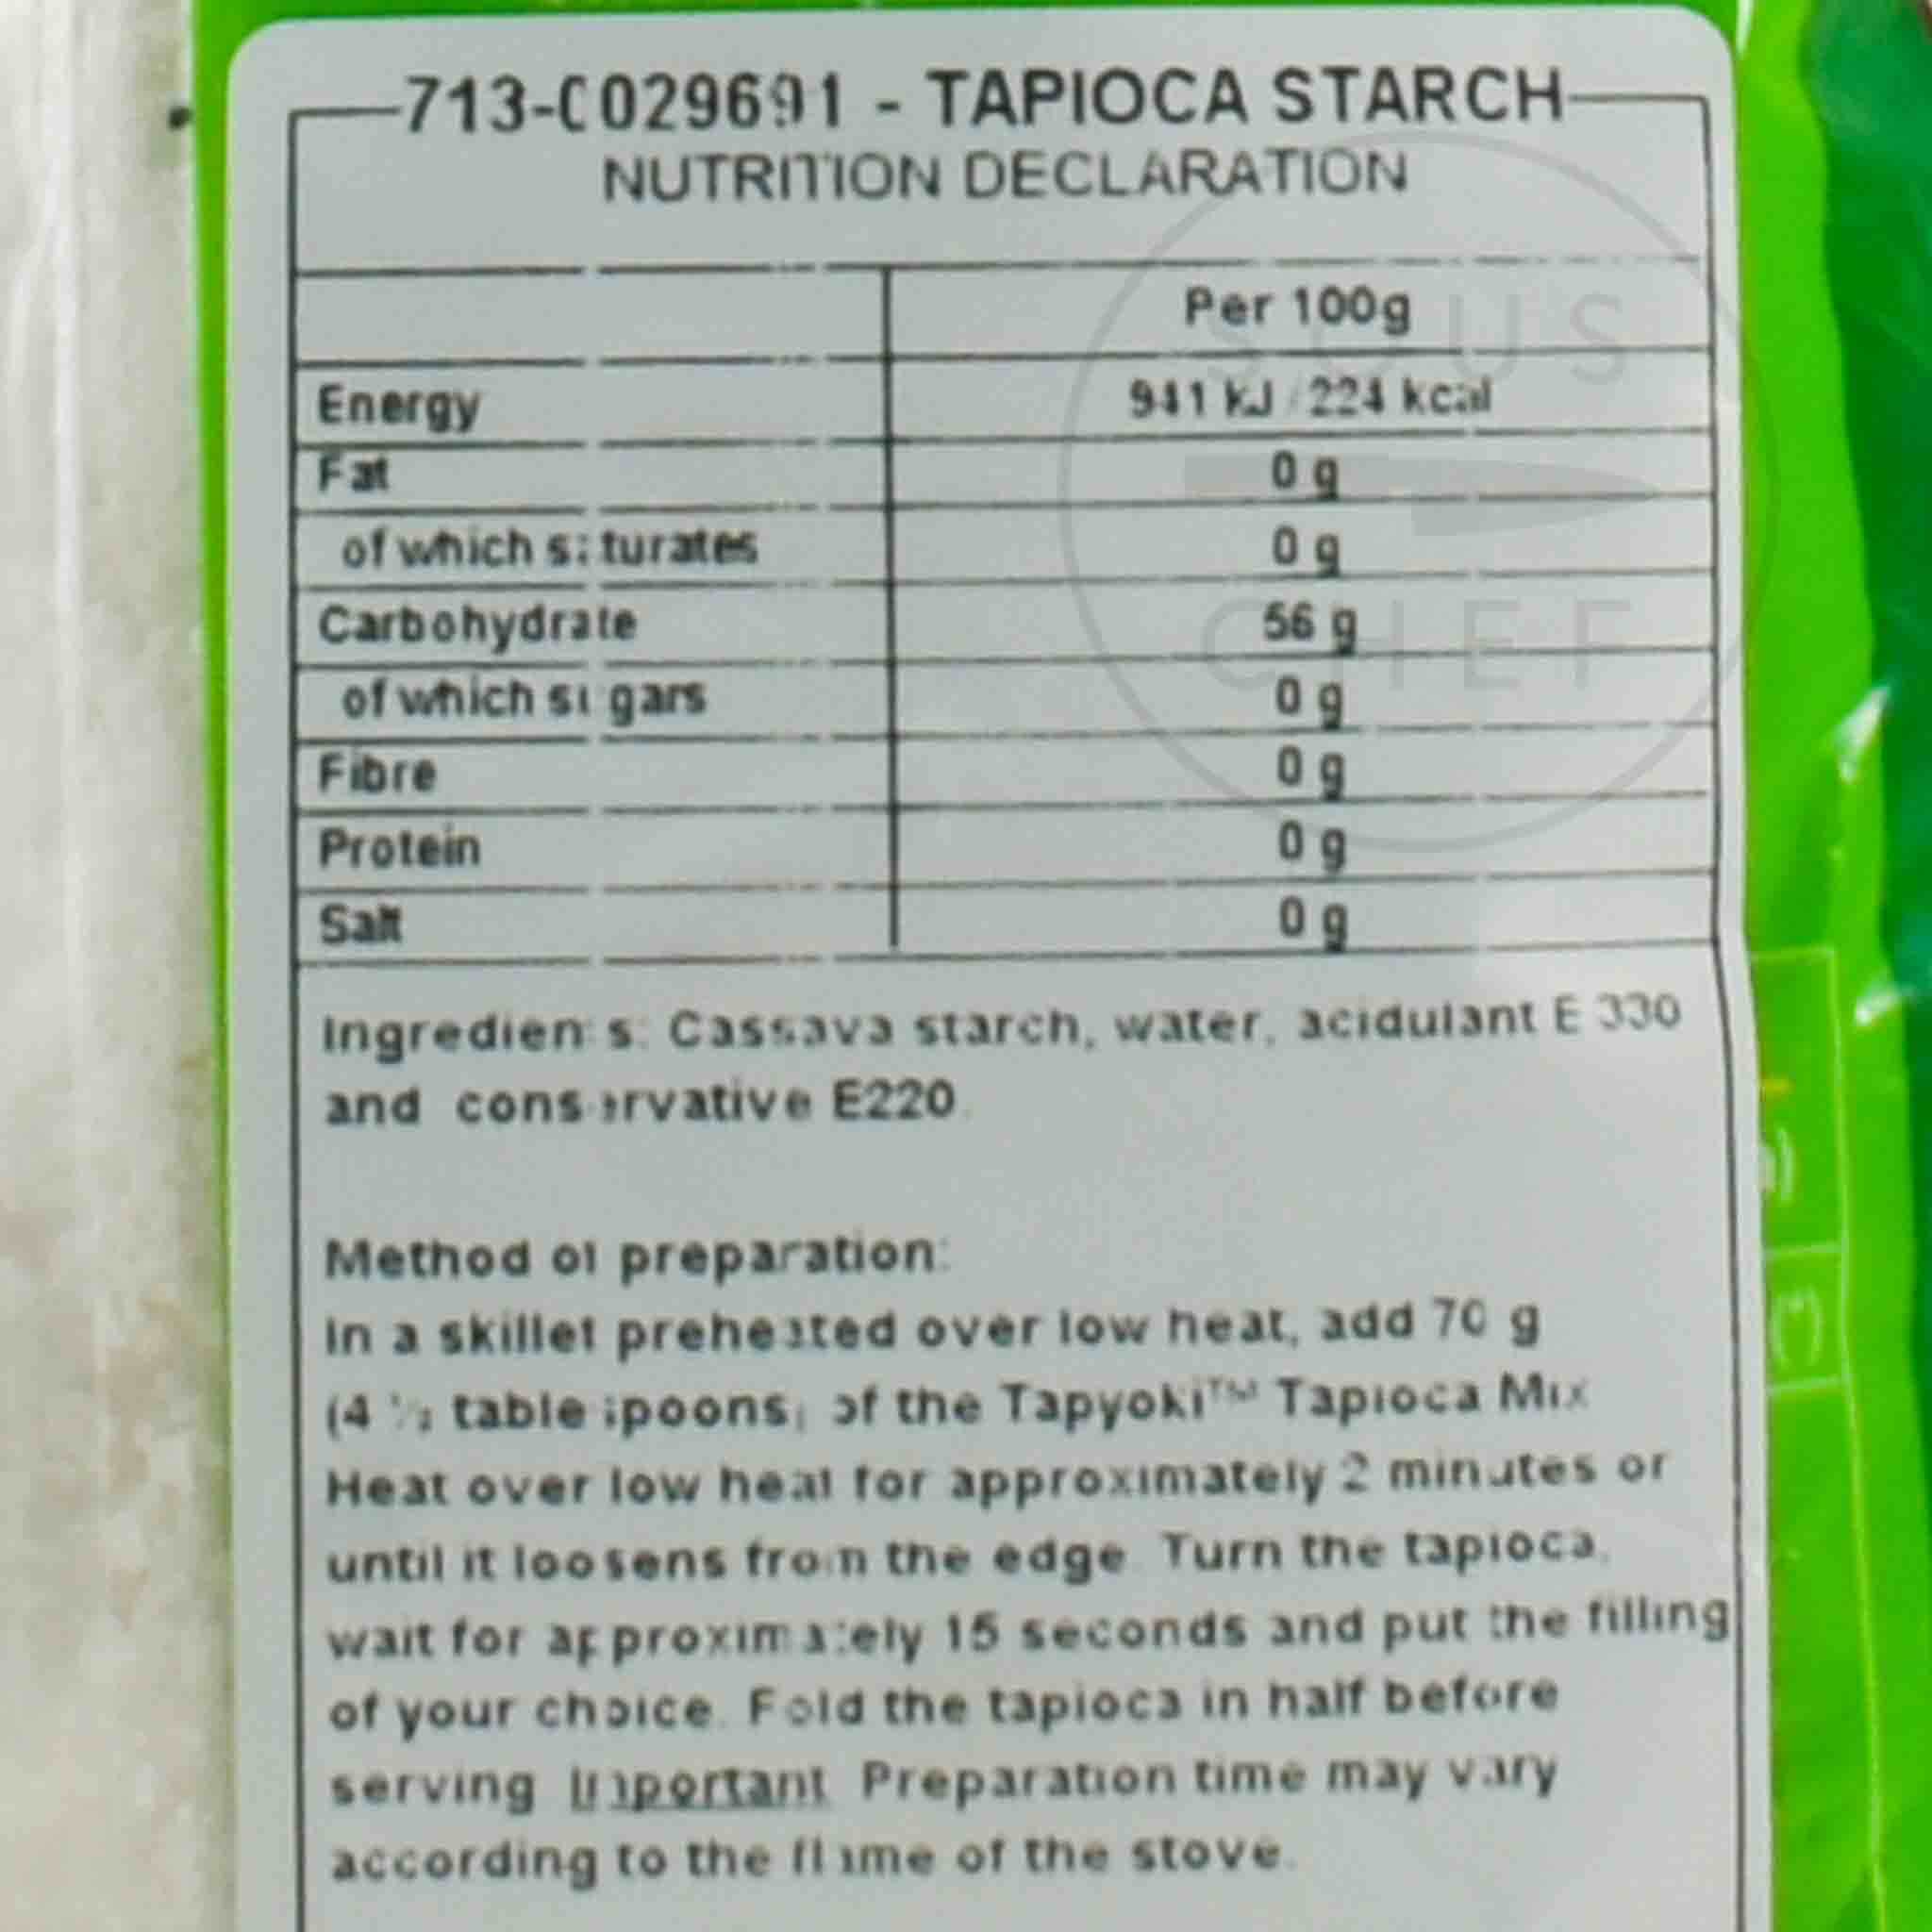 Yoki Hydrated Tapioca Starch, 500g